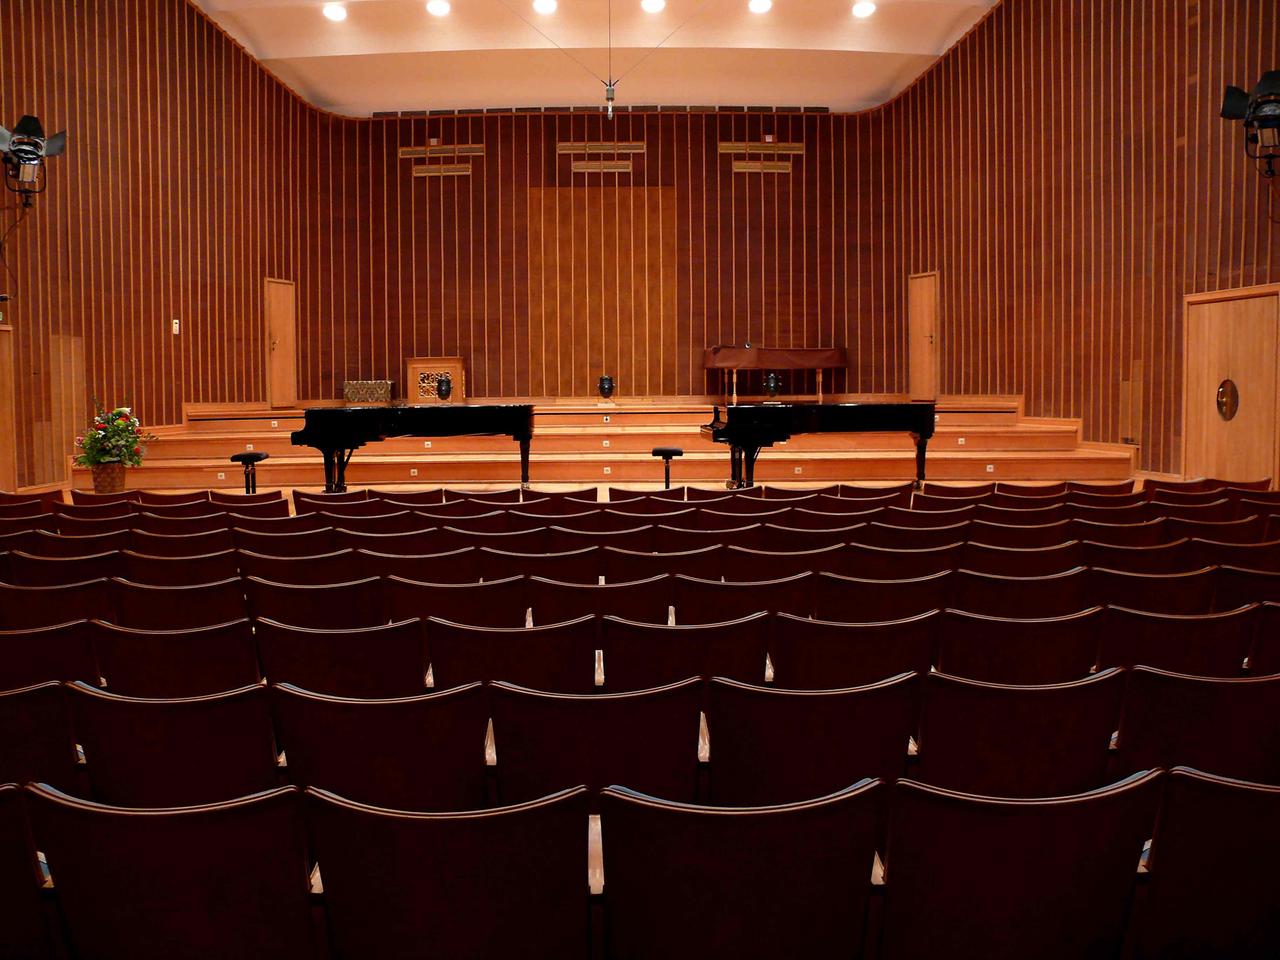 Ein holzgetäfelter Saal ist in warmes Licht getaucht. Vor der Bühne stehen zwei schwarz glänzende Flügel. Im Hintergrund ist ein abgedecktes Cembalo zu sehen. Die Stuhlreihen sind im Saal sind leer. Von der Decke hängt ein Mikrofon.